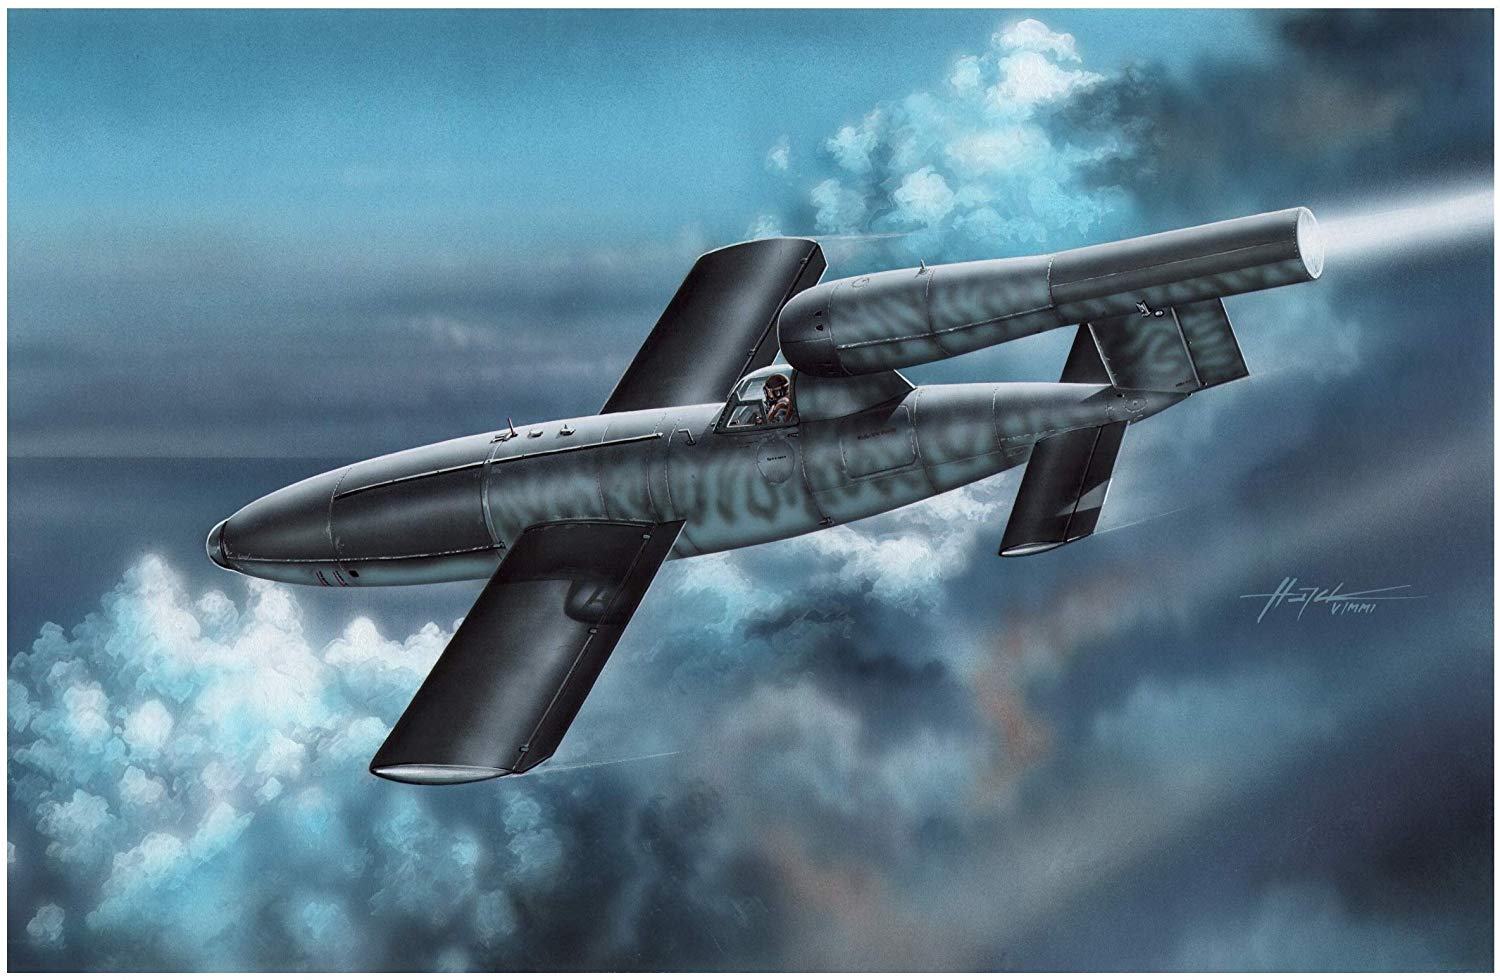 1/32『独・フェゼラー Fi103A-1/Re4 ライフェンベルク攻撃機』プラモデル-001